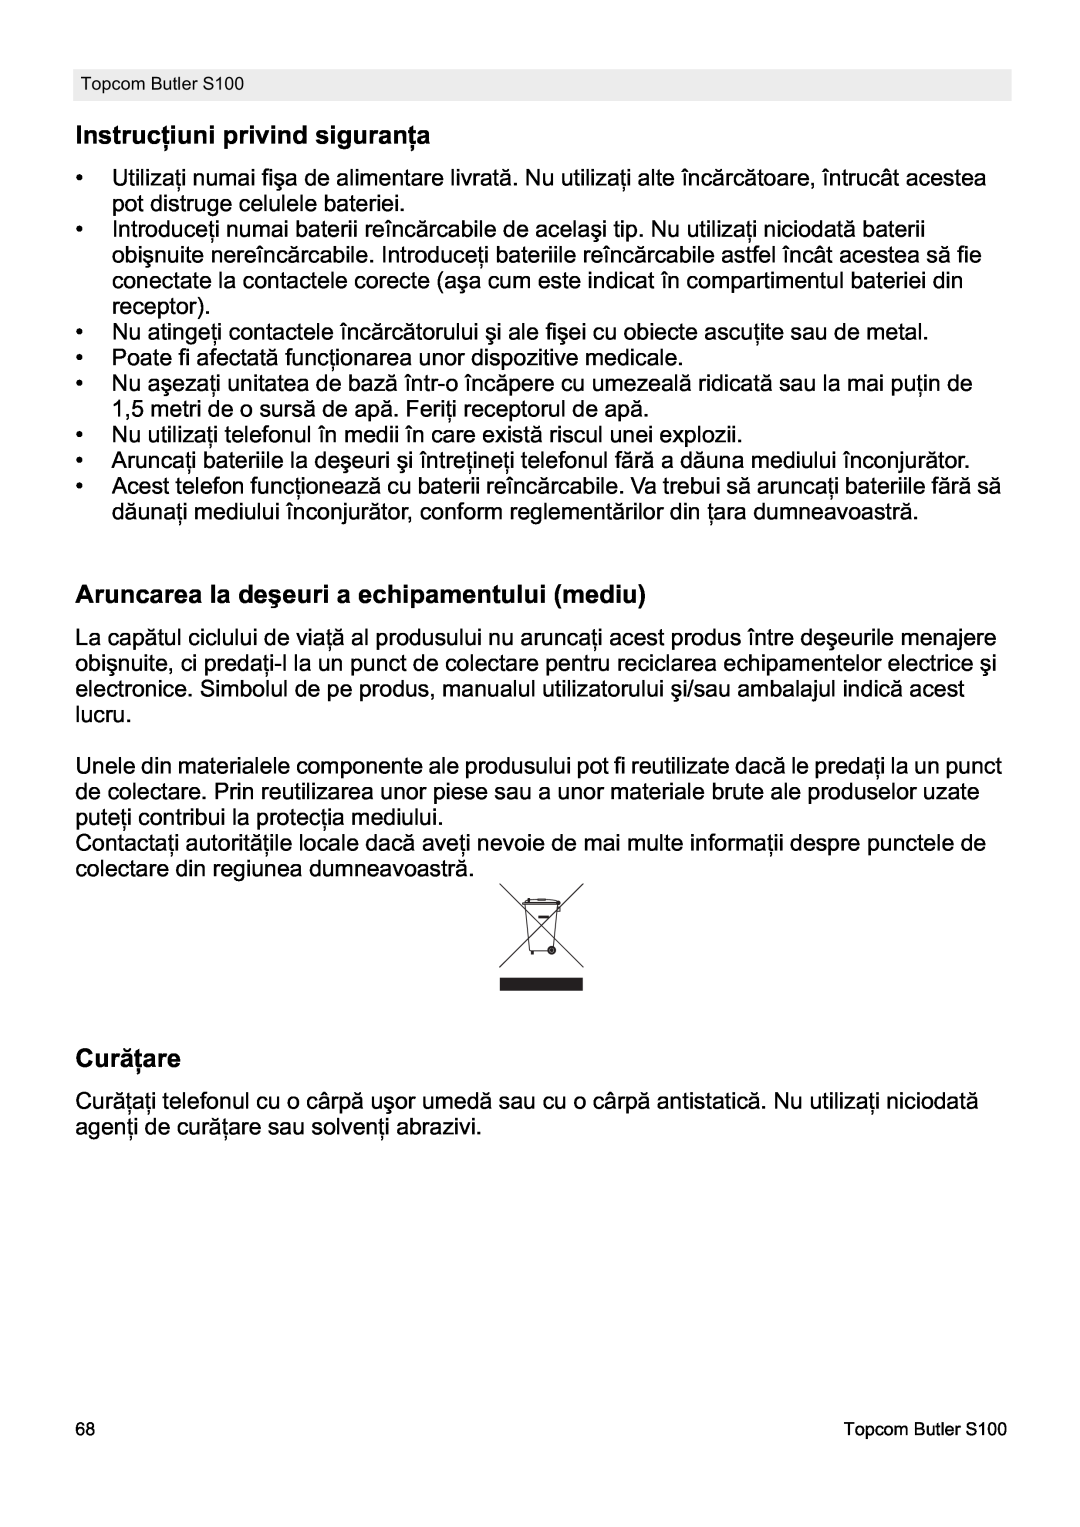 Topcom S100 manual do utilizador InstrucĠiuni privind siguranĠa, Aruncarea la deúeuri a echipamentului mediu, CurăĠare 